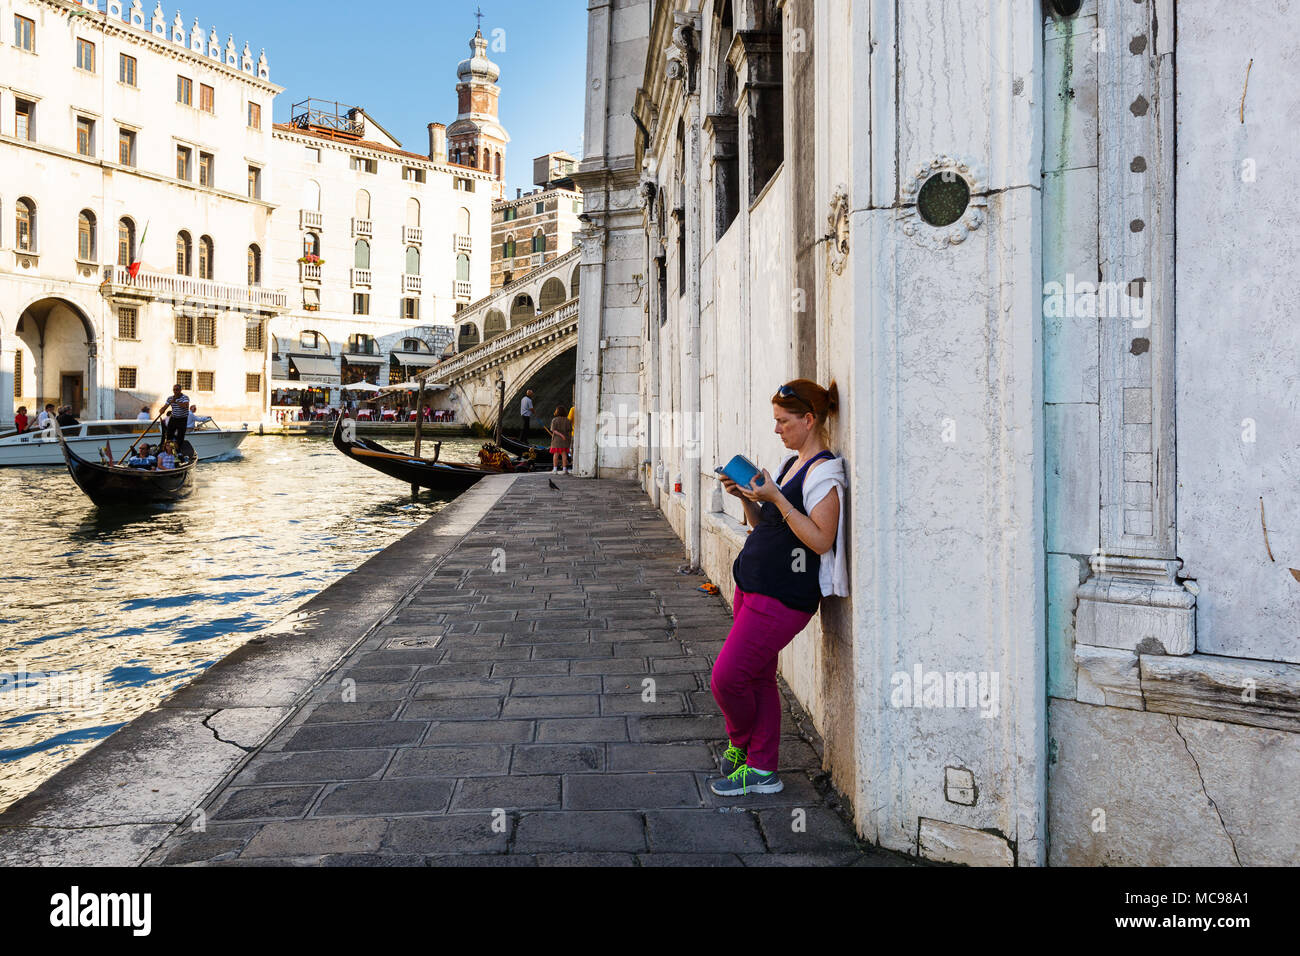 Venezia, Italia - Giugno, 21, 2013: Vista della gondola e il Ponte di Rialto, molti turisti su un ponte, donne legge un libro all'ombra, il campanile della chiesa Foto Stock